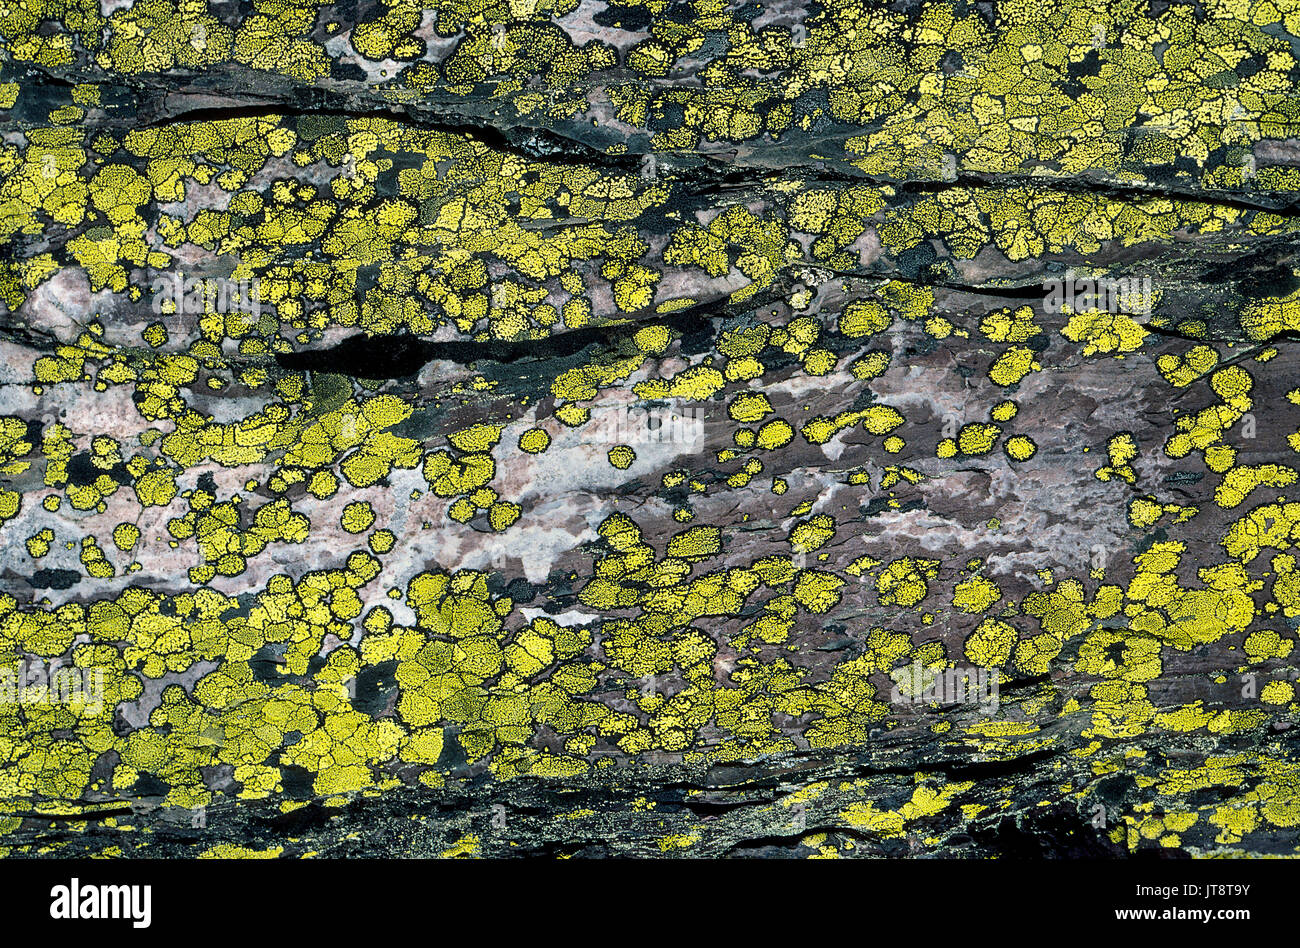 Diese gelben Flechten wachsen auf einem großen Felsen mit einem interessanten Natur Studie, sowie eine interessante Hintergrund. Die lebenden Organismen sind eine Kombination aus einem Pilz, hat eine symbiotische Beziehung mit Algen oder Bakterien. Flechten gilt als eines der frühesten Lebensformen und Termine Die auf mindestens 400 Millionen Jahren. Diese werden als Karte Flechten (Rhizocarpon geographicum) und jede gelbe Patch hat einen schwarzen Rand von Sporen. Stockfoto